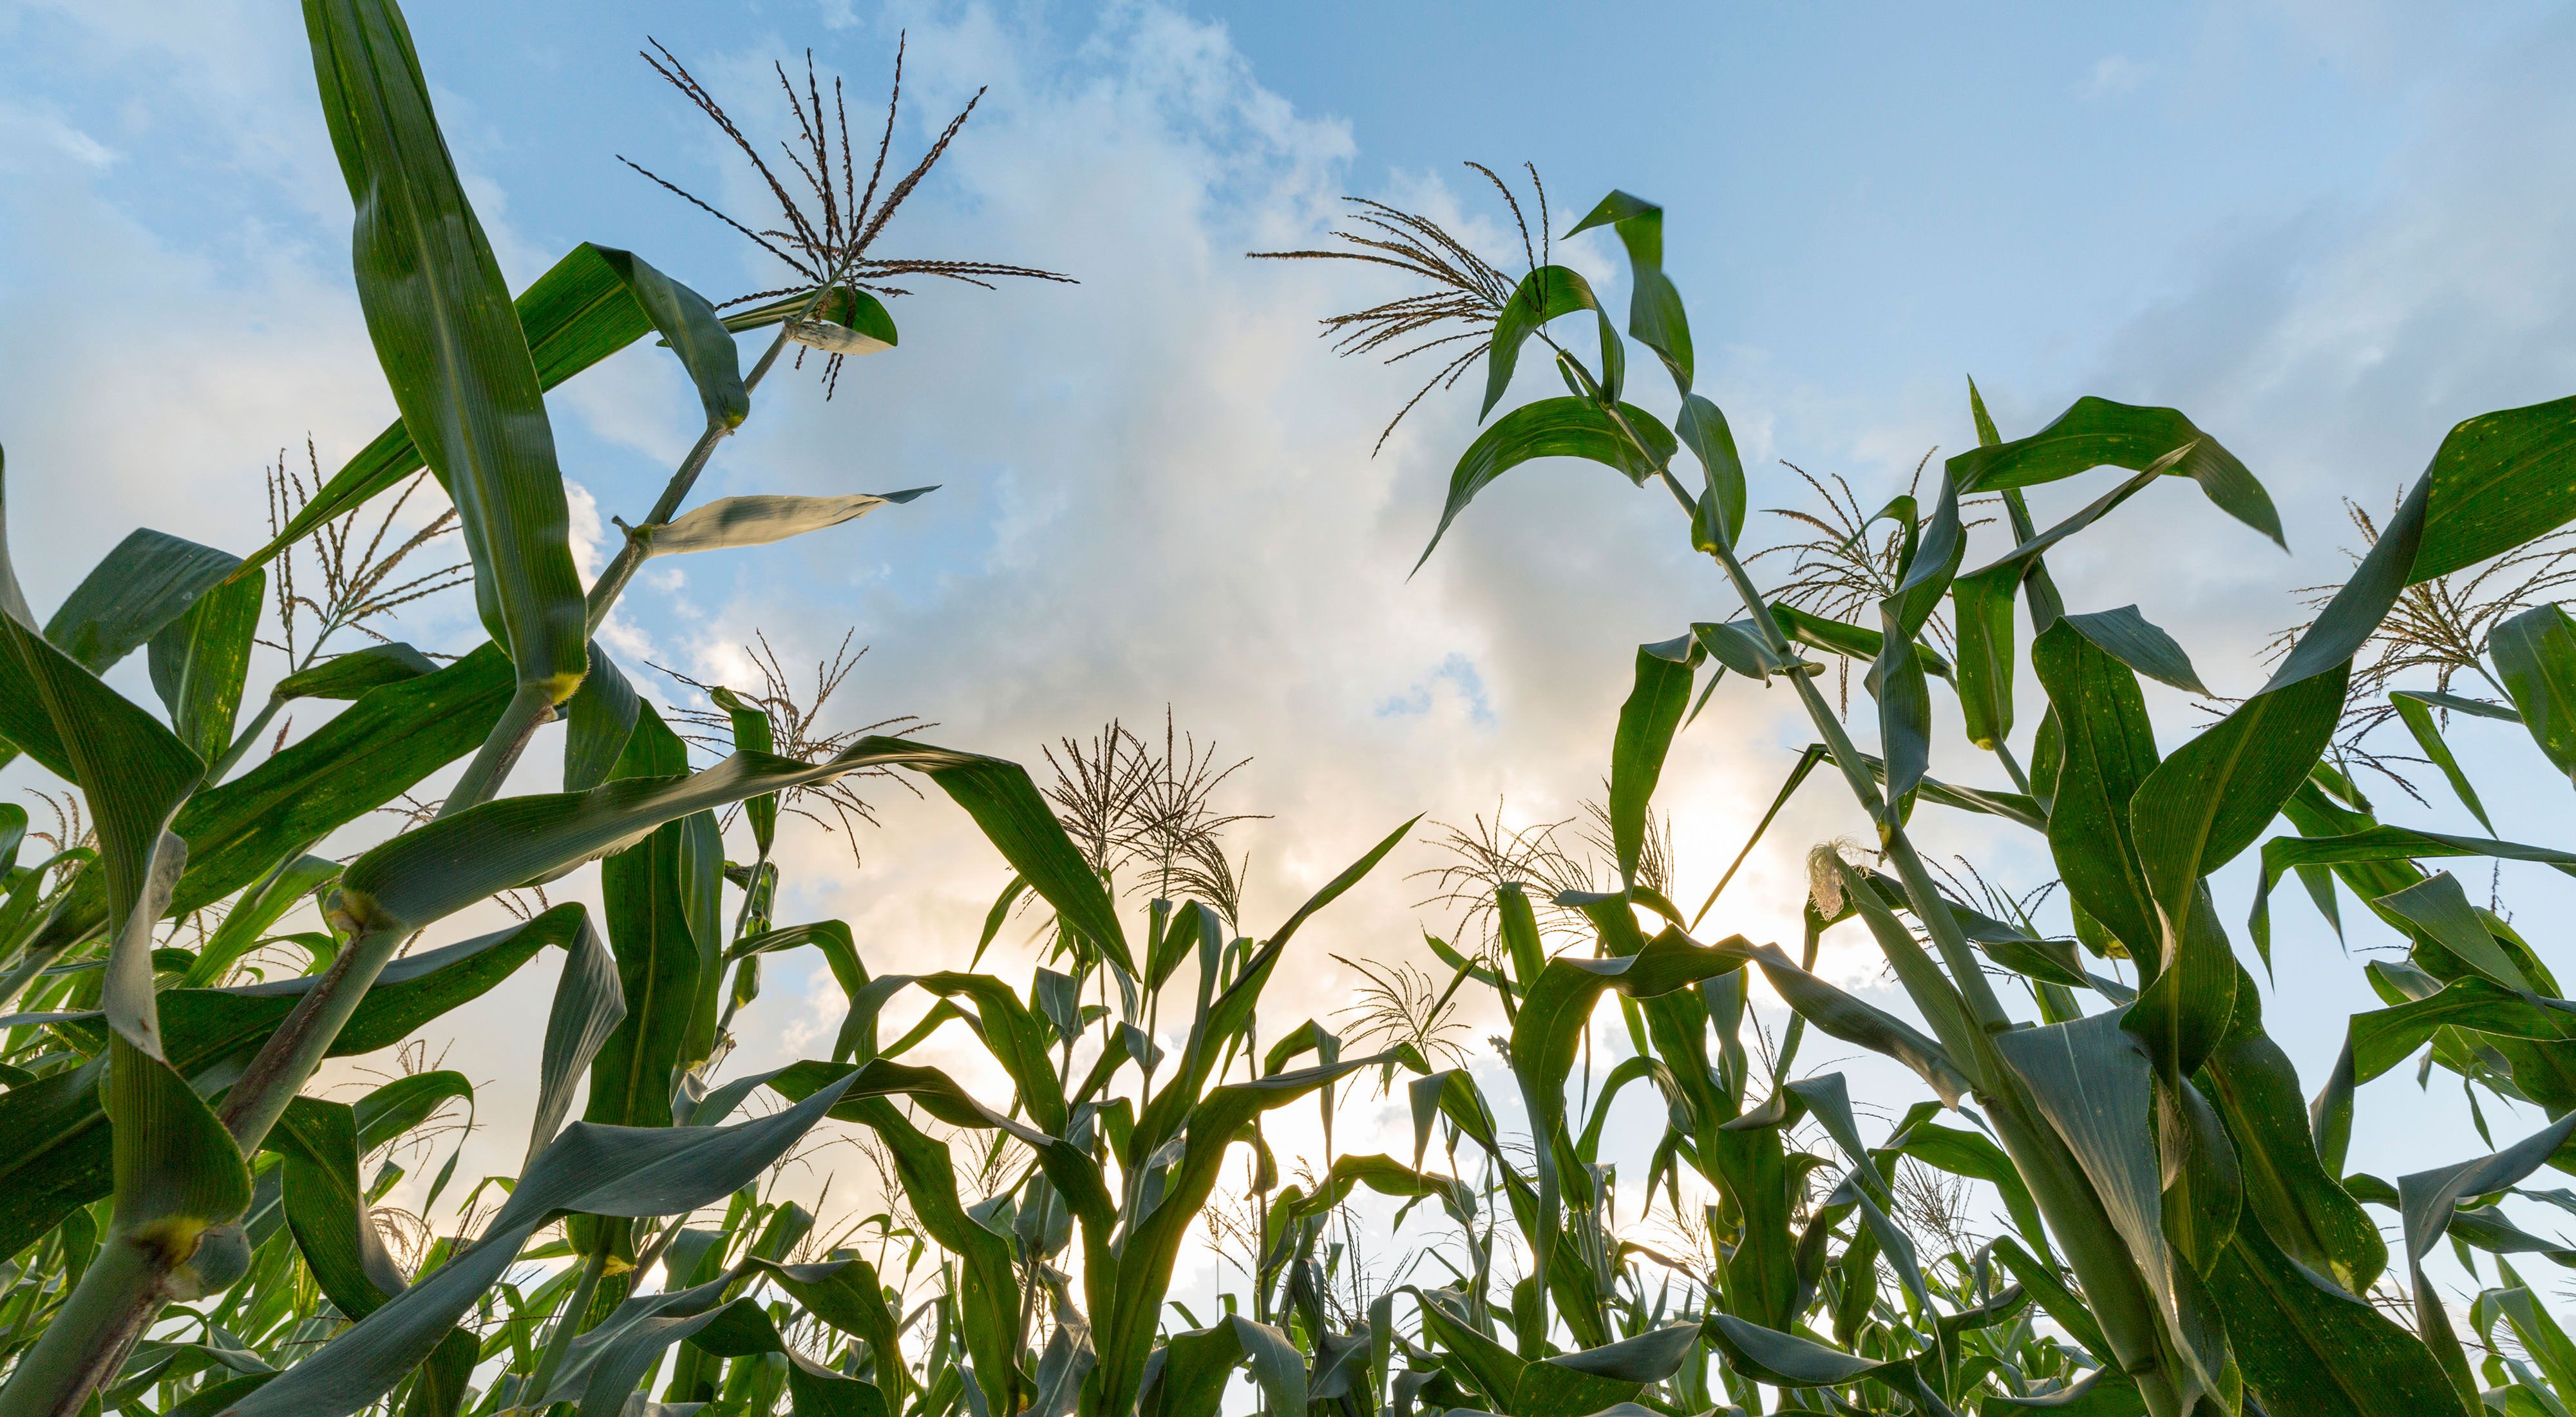 Corn plants against blue sky